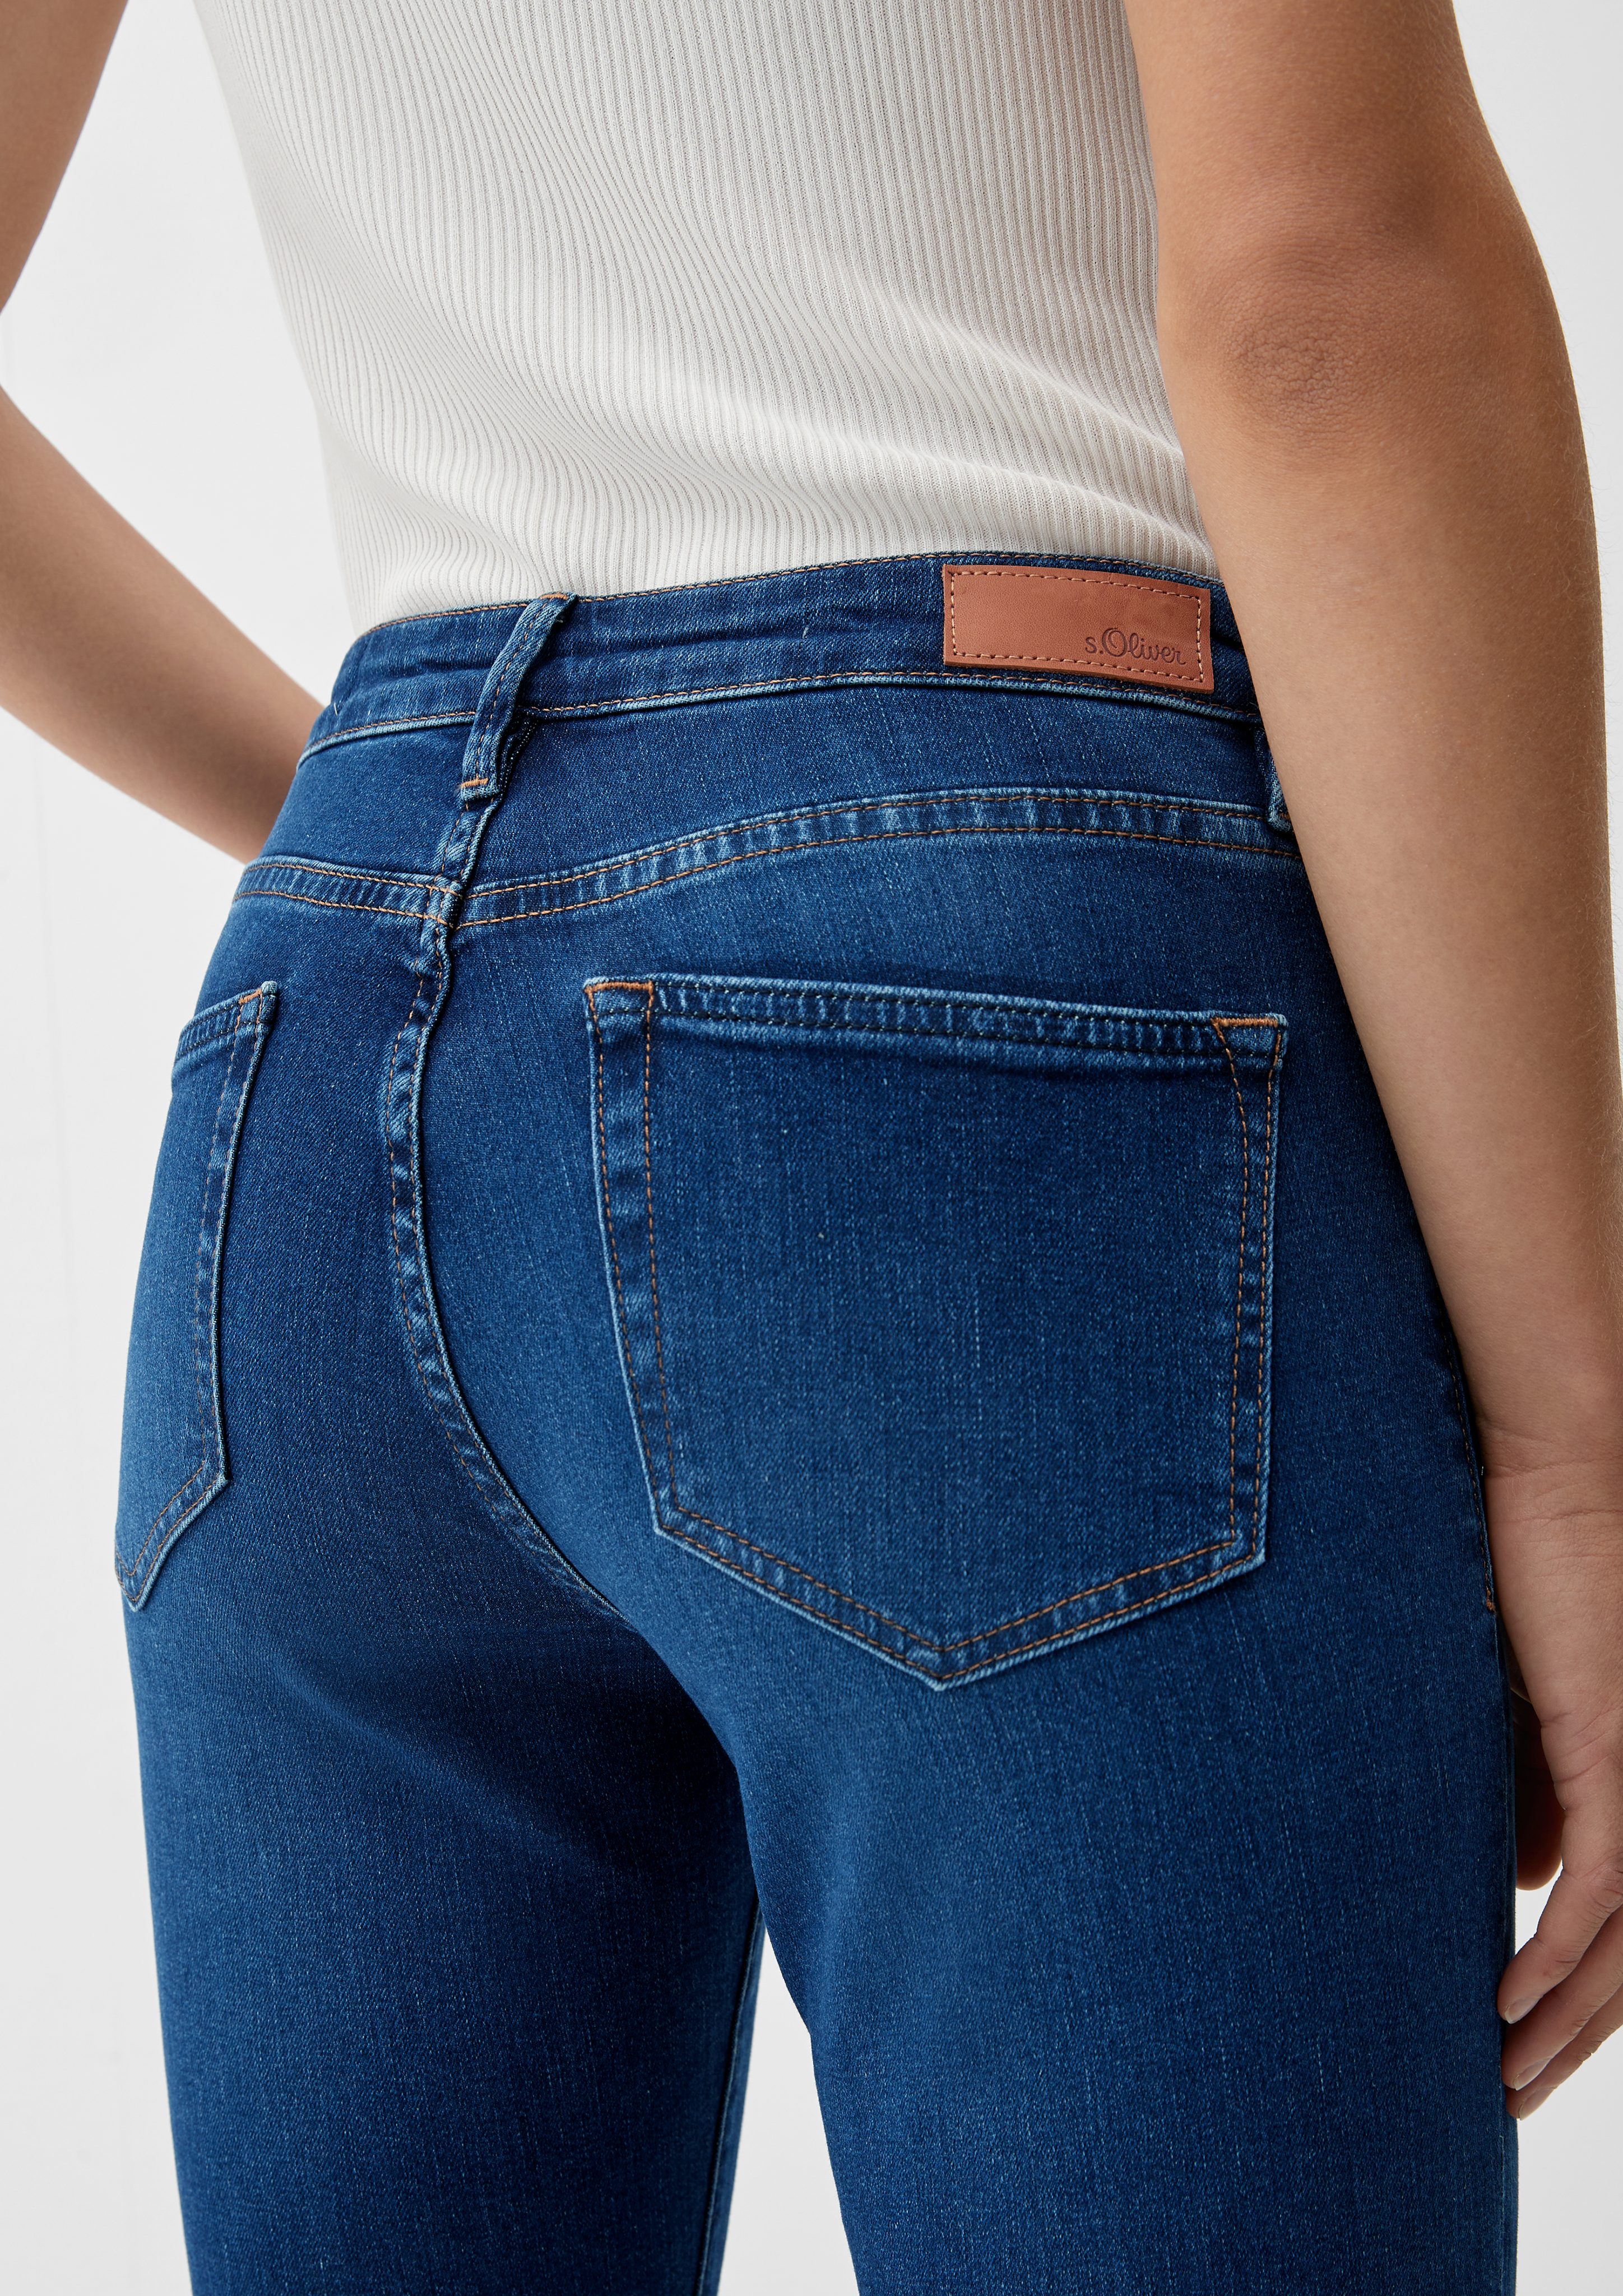 Fit Beverly Bootcut / Leder-Patch Jeans Rise 5-Pocket-Jeans s.Oliver Mid / Leg / Slim